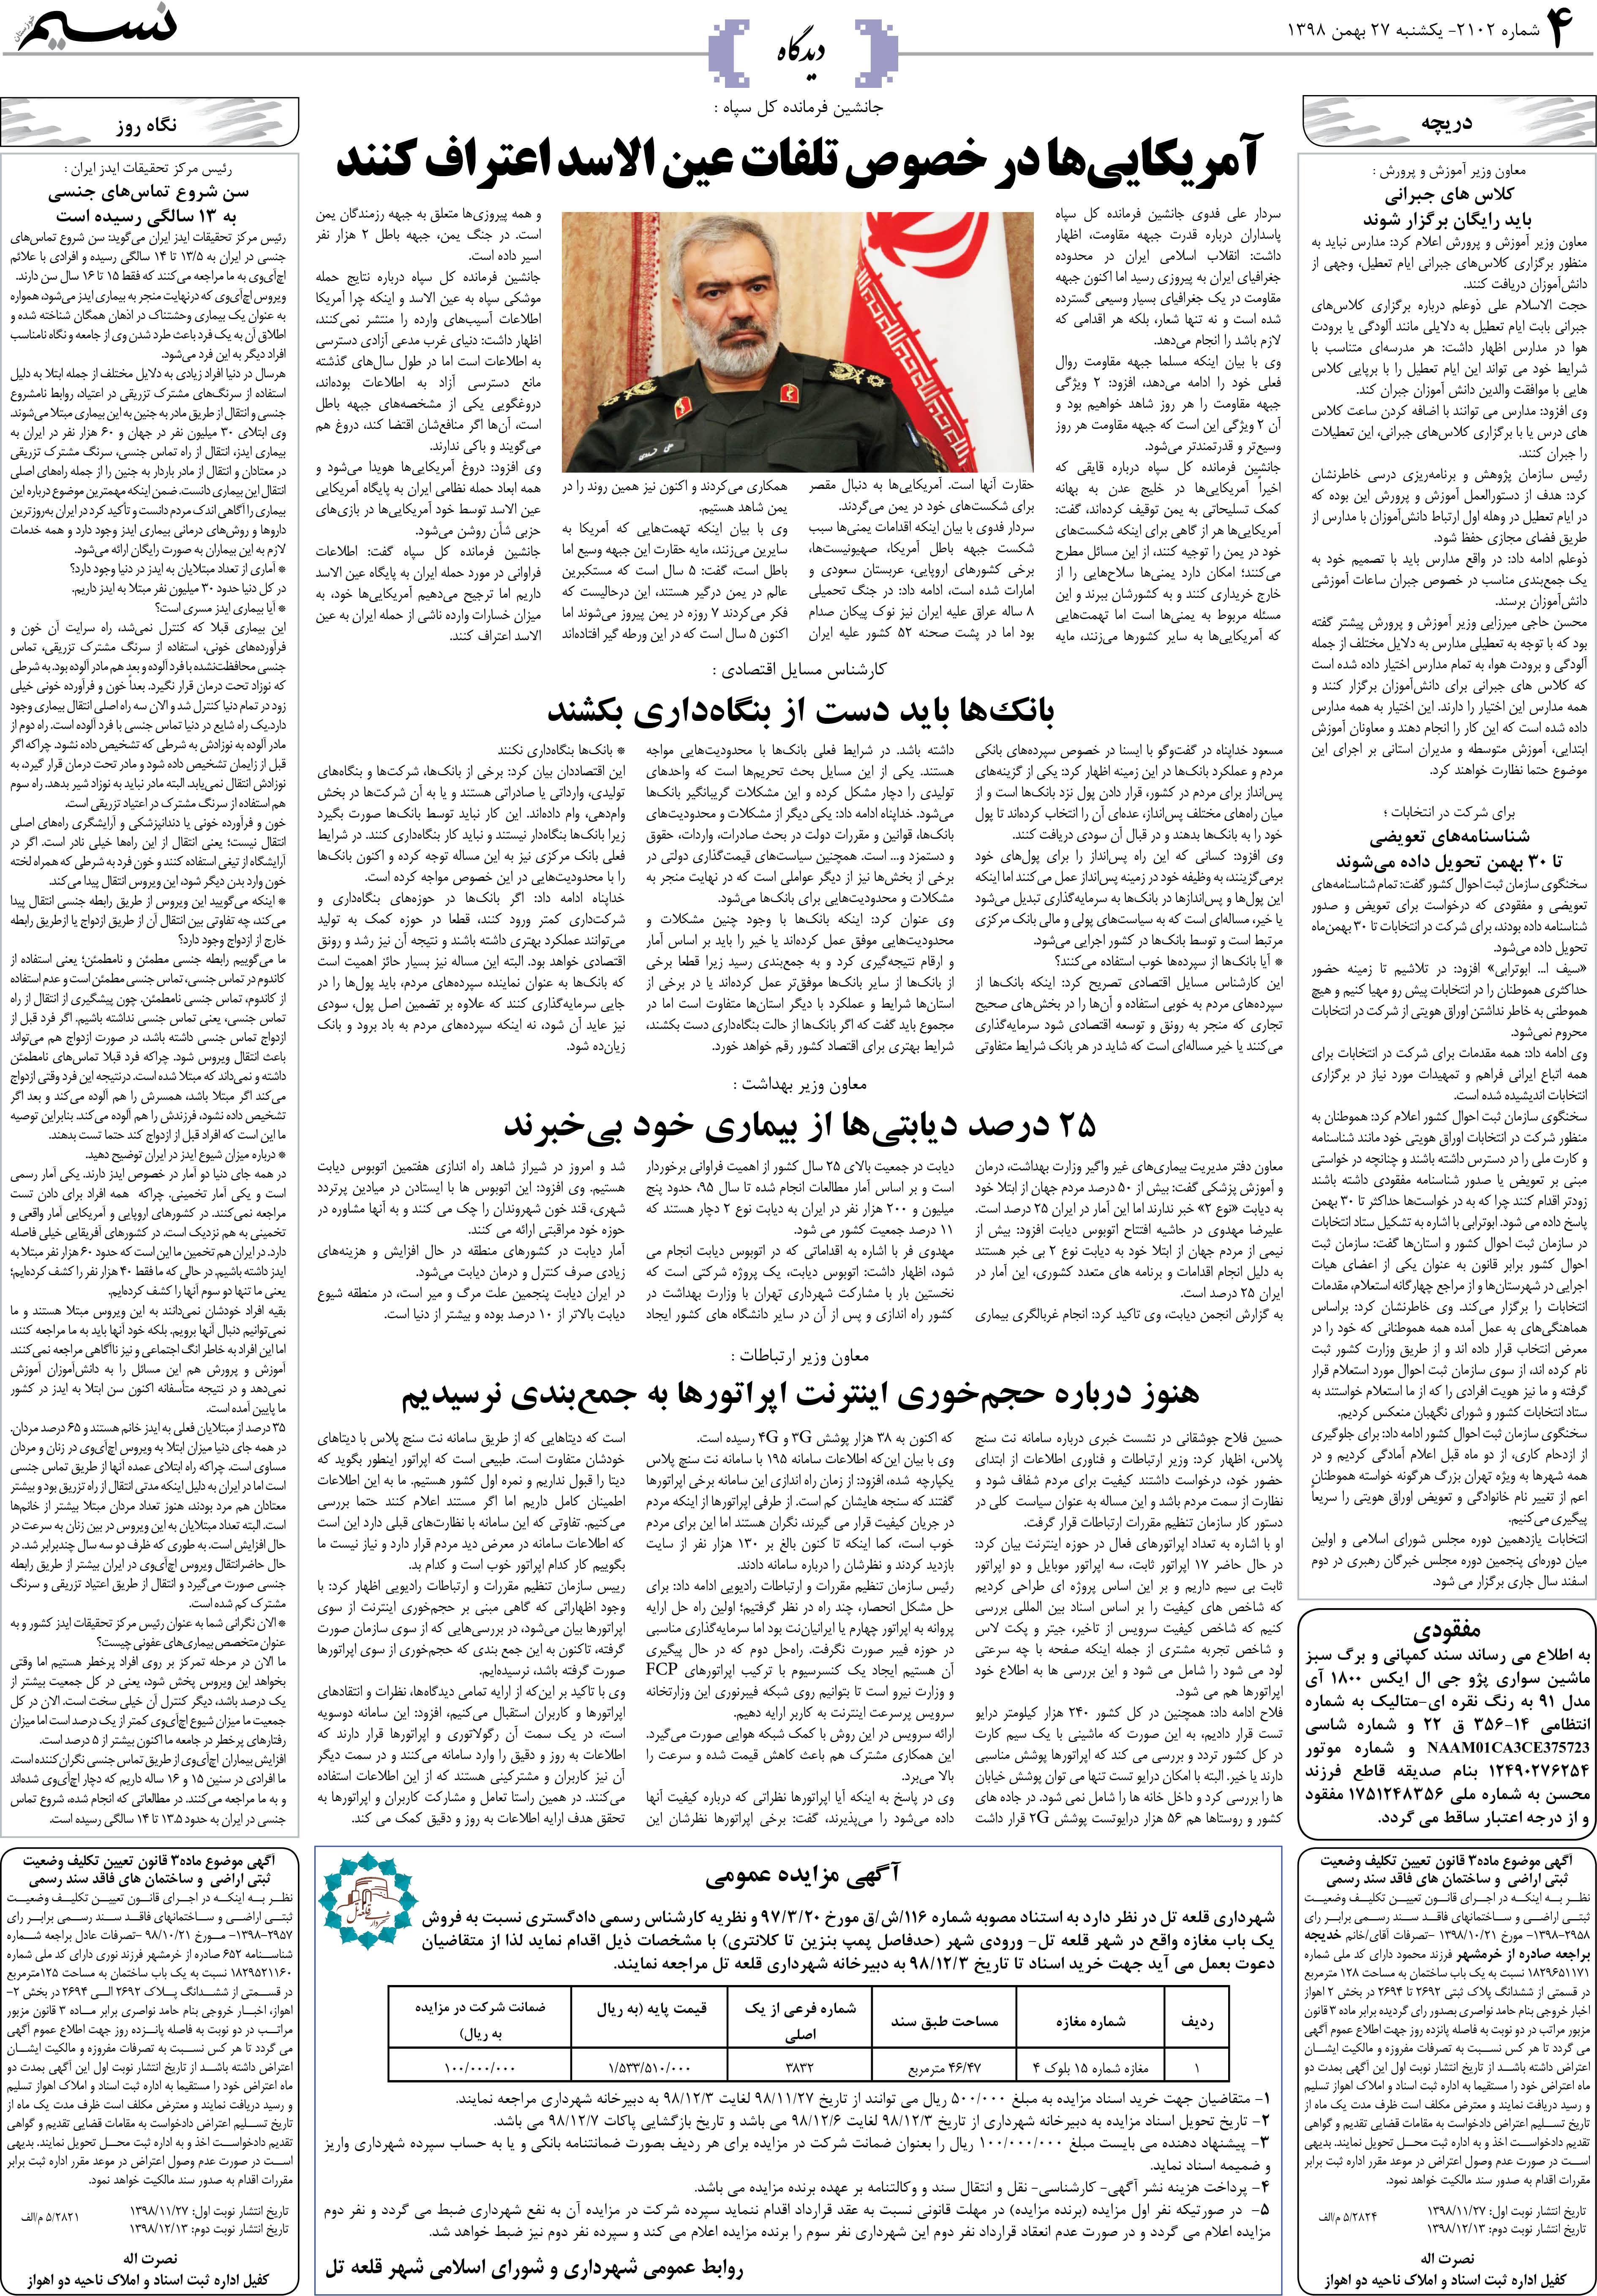 صفحه دیدگاه روزنامه نسیم شماره 2102